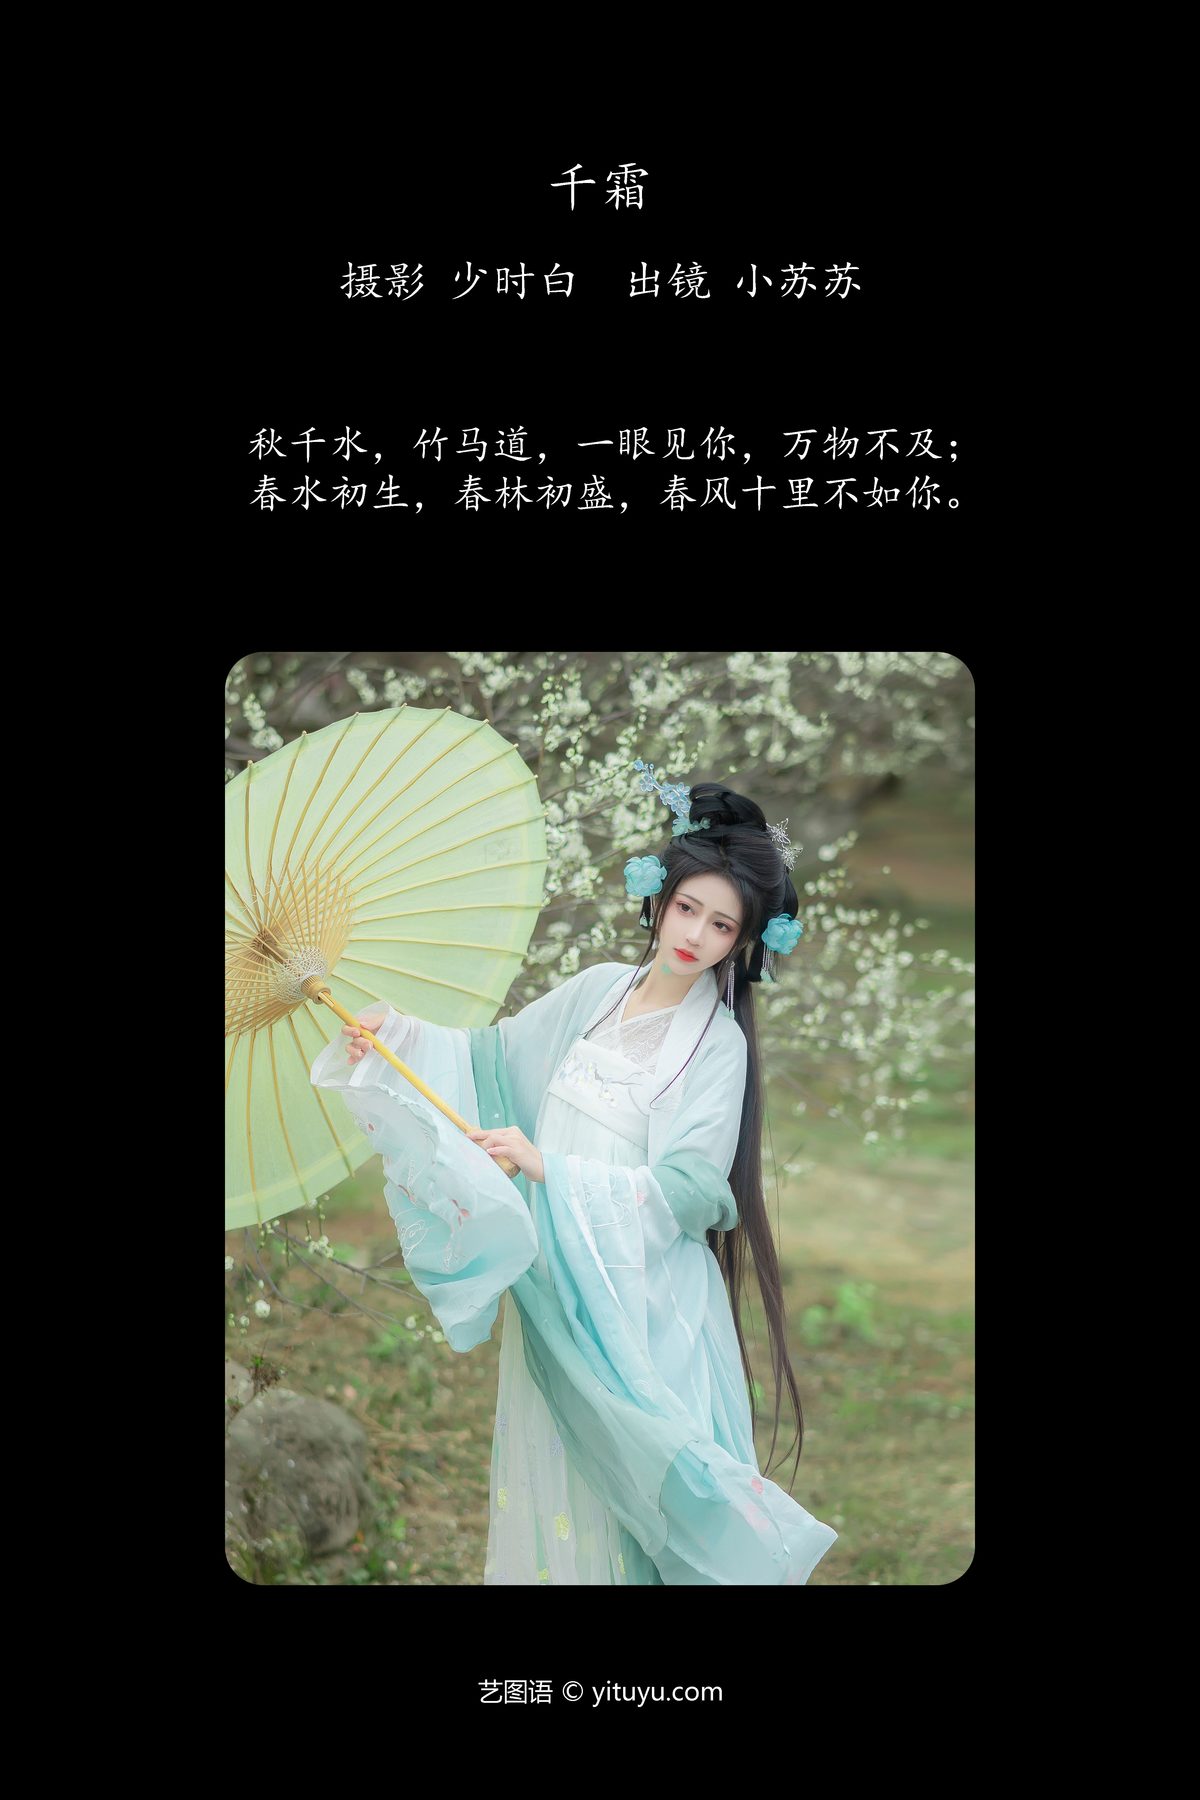 YiTuYu艺图语 Vol 5774 Qi Luo Sheng De Xiao Su Su 0002 7927424296.jpg